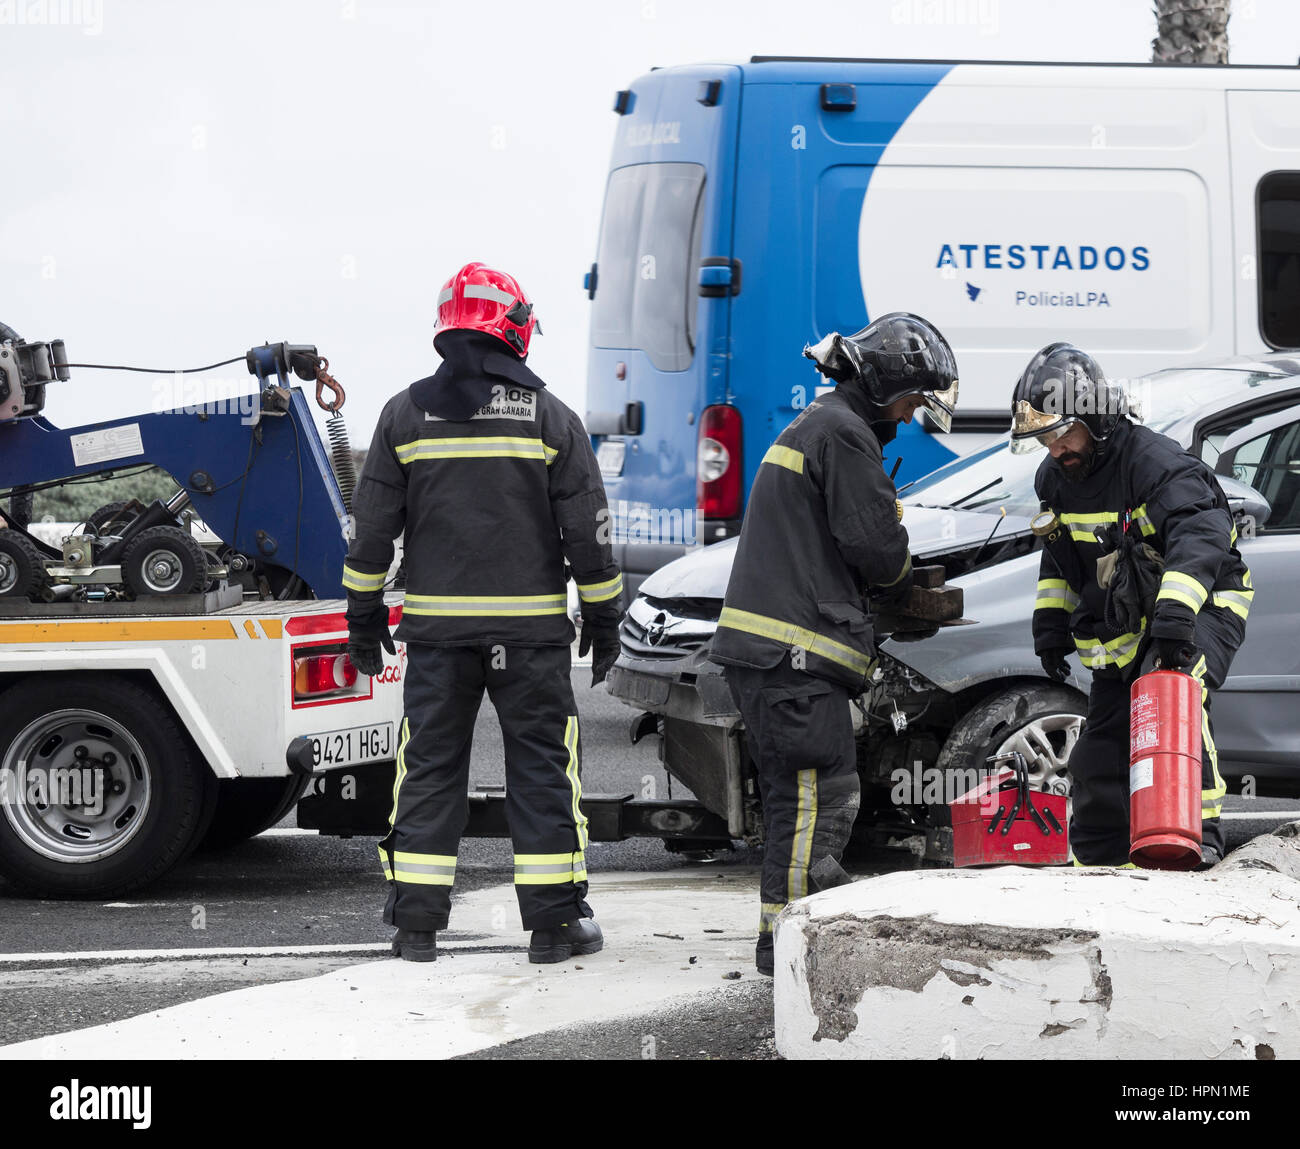 Accident de la route en Espagne avec les pompiers (bomberos) présents. Banque D'Images